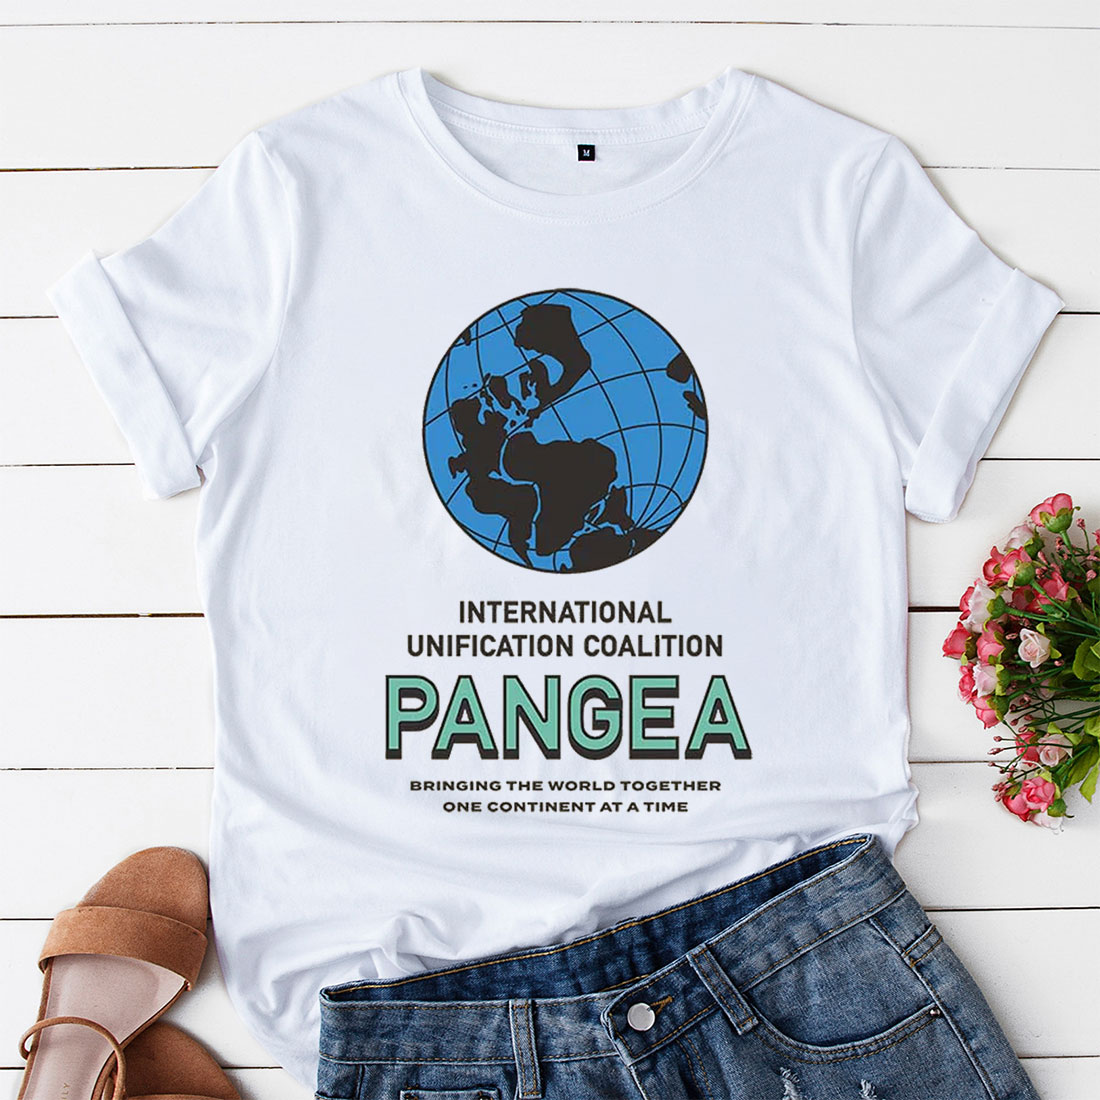 pangea t-shirt